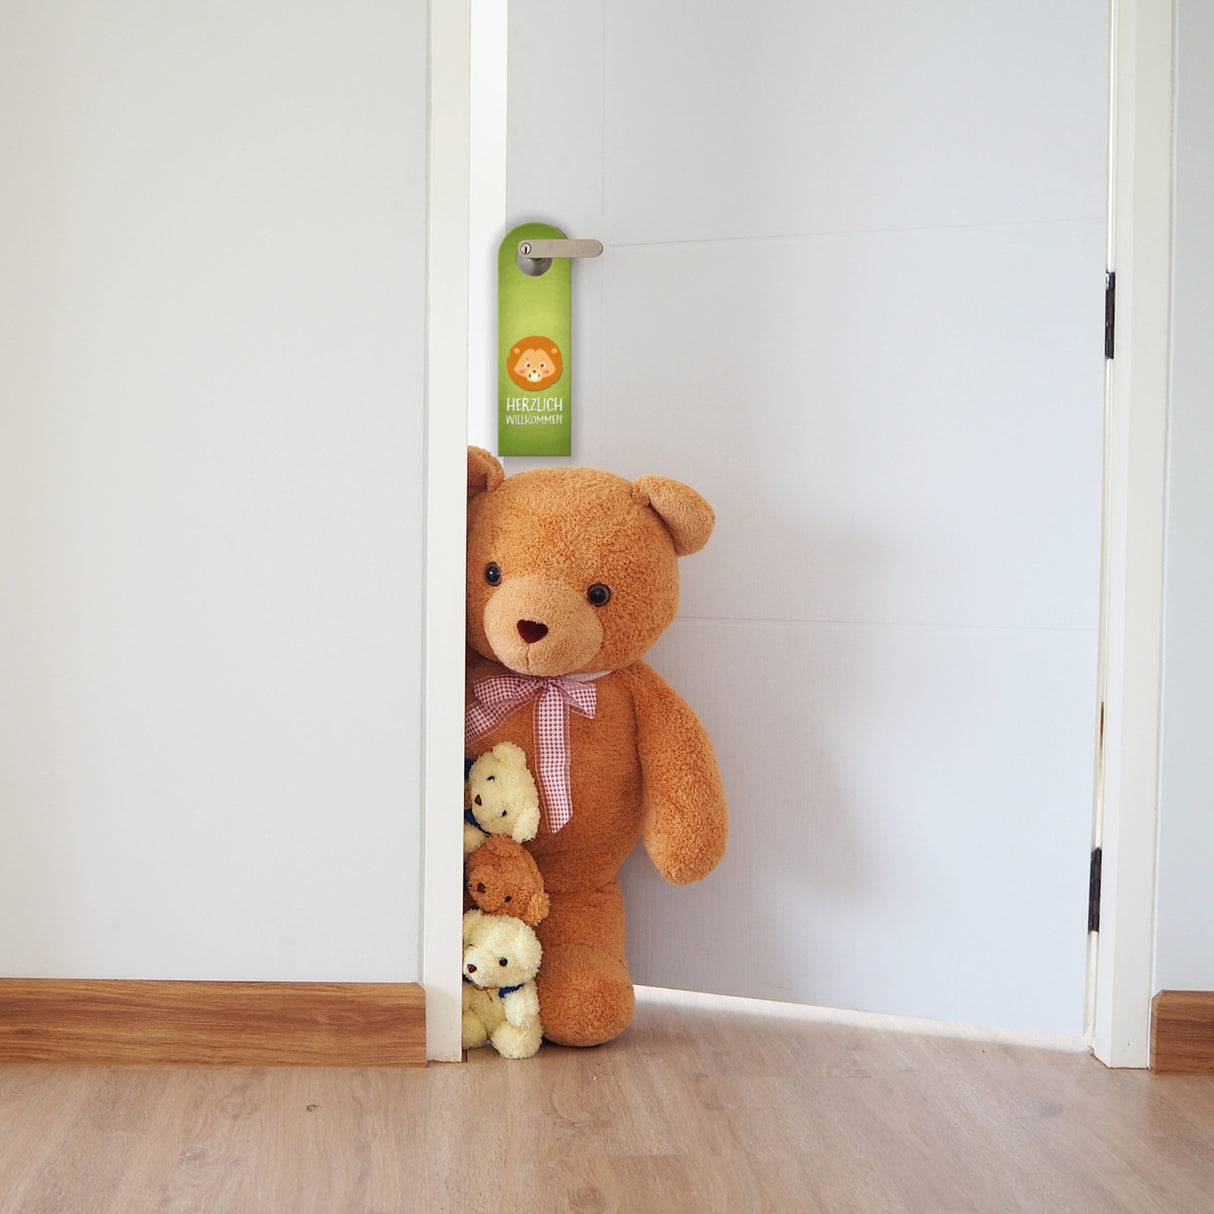 Verbot oder willkommen Türhänger mit Tier Motiv fürs Kinderzimmer - Kind Kinder Zimmer Zimmertüre